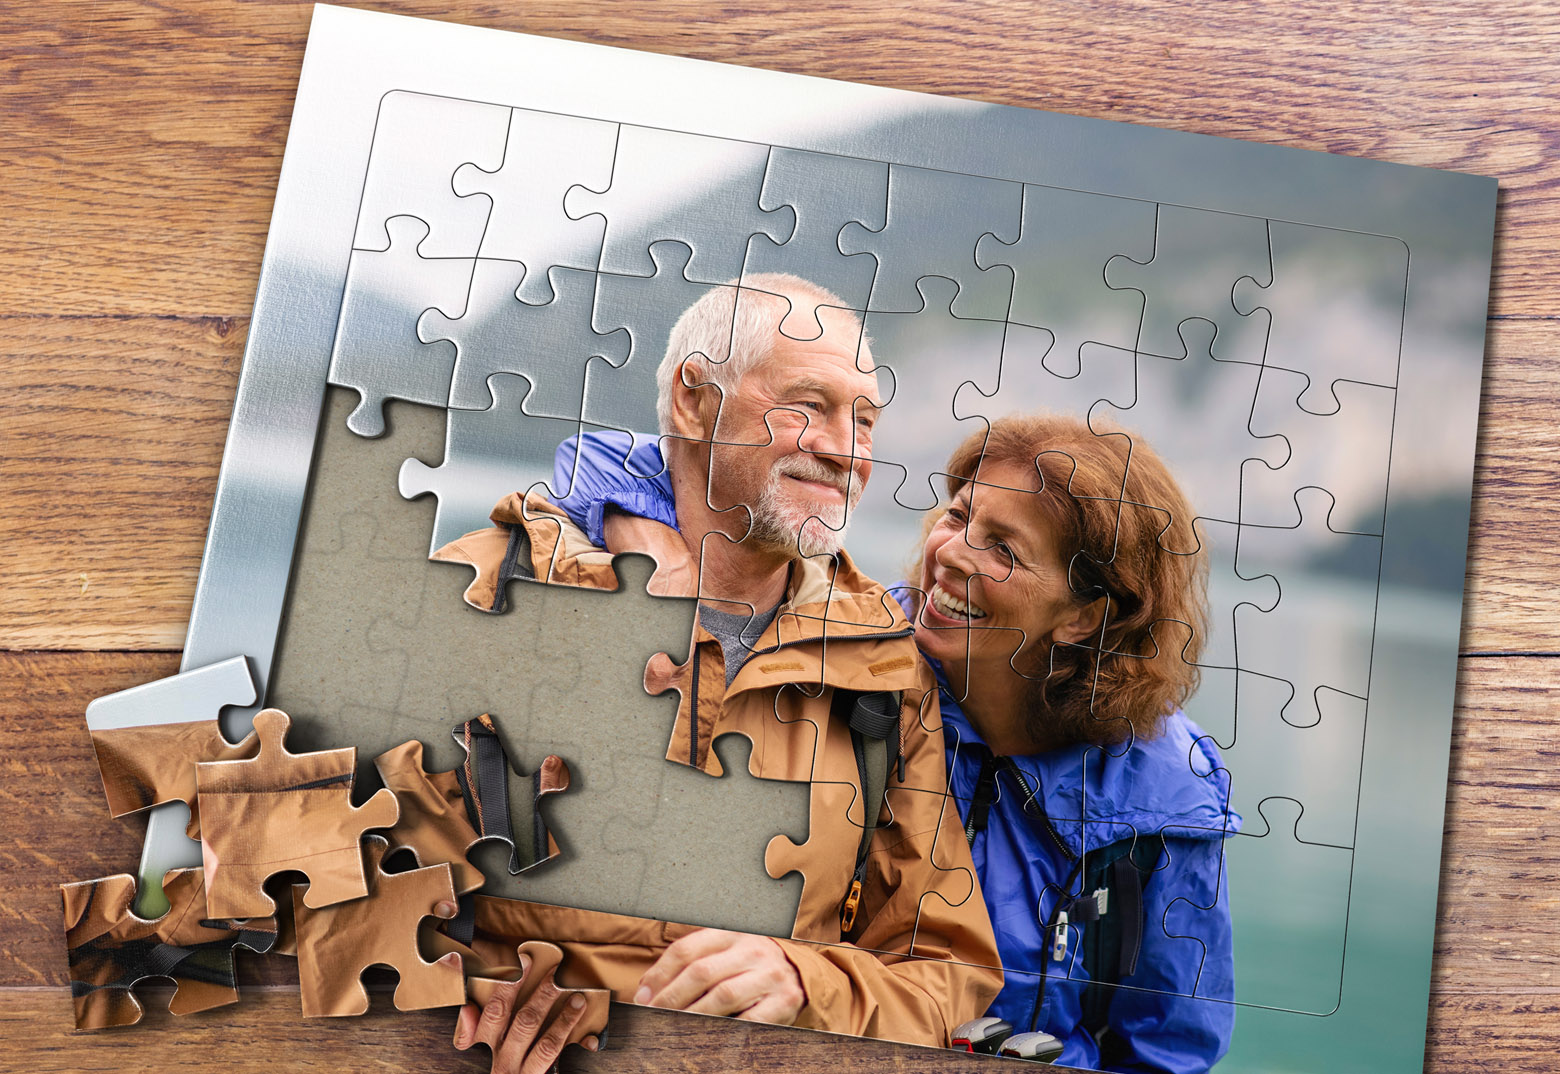 Auf einem Holztisch ist ein individuell gestaltetes Fotopuzzle bei MeinSpiel mit einem Paar, fotgrafiert beim Wandern vor einem See, als Motiv zu sehen